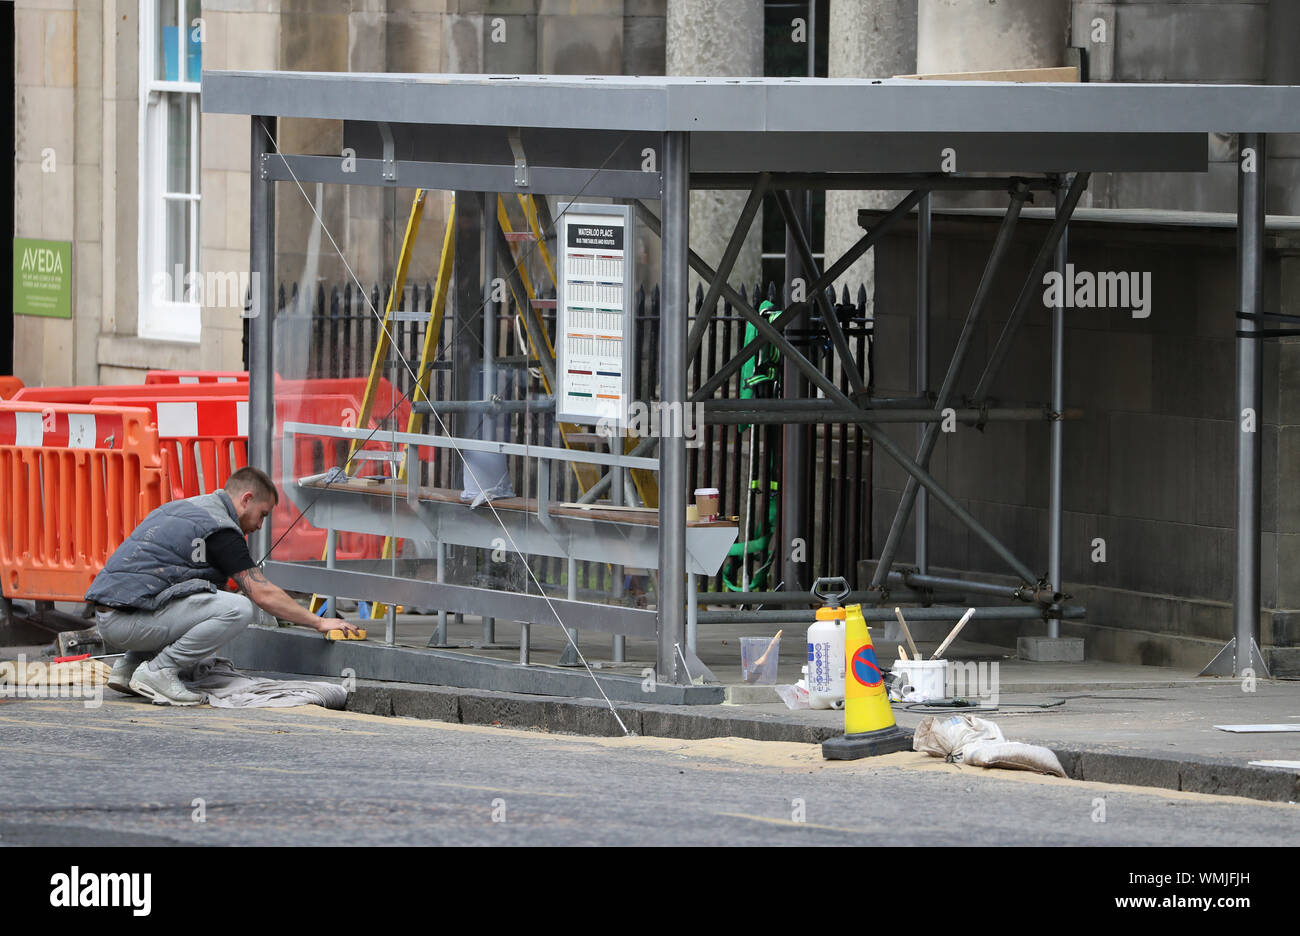 Situé immeuble continue pendant les répétitions avant le tournage de Fast and Furious 9 dans la région de Waterloo Place à Édimbourg. Banque D'Images